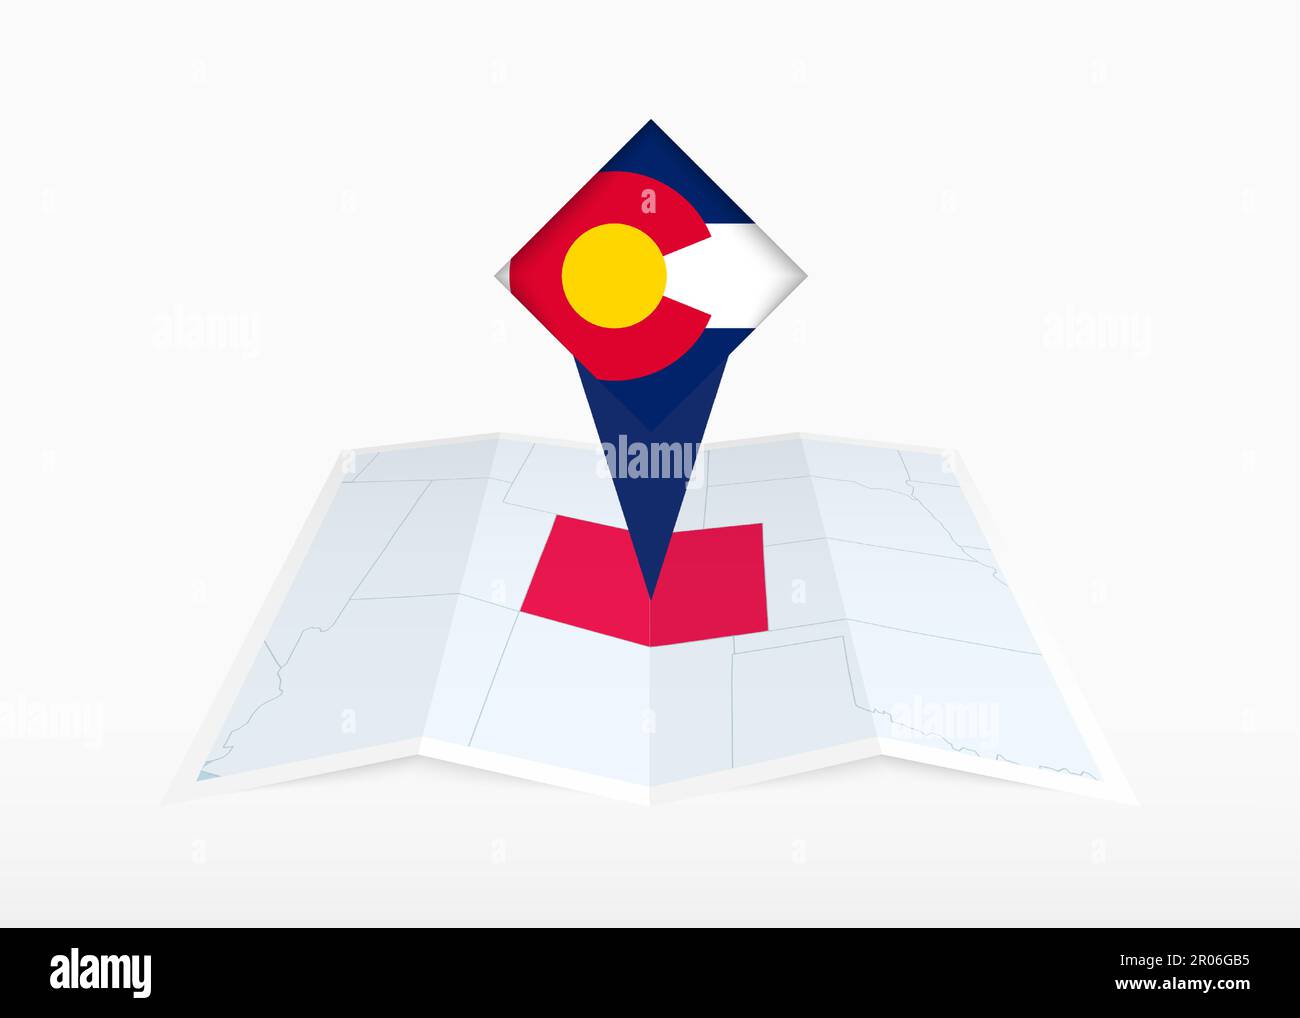 Colorado ist auf einer gefalteten Karte in Papierform abgebildet und mit der Flagge Colorados gekennzeichnet. Gefaltete Vektorkarte. Stock Vektor